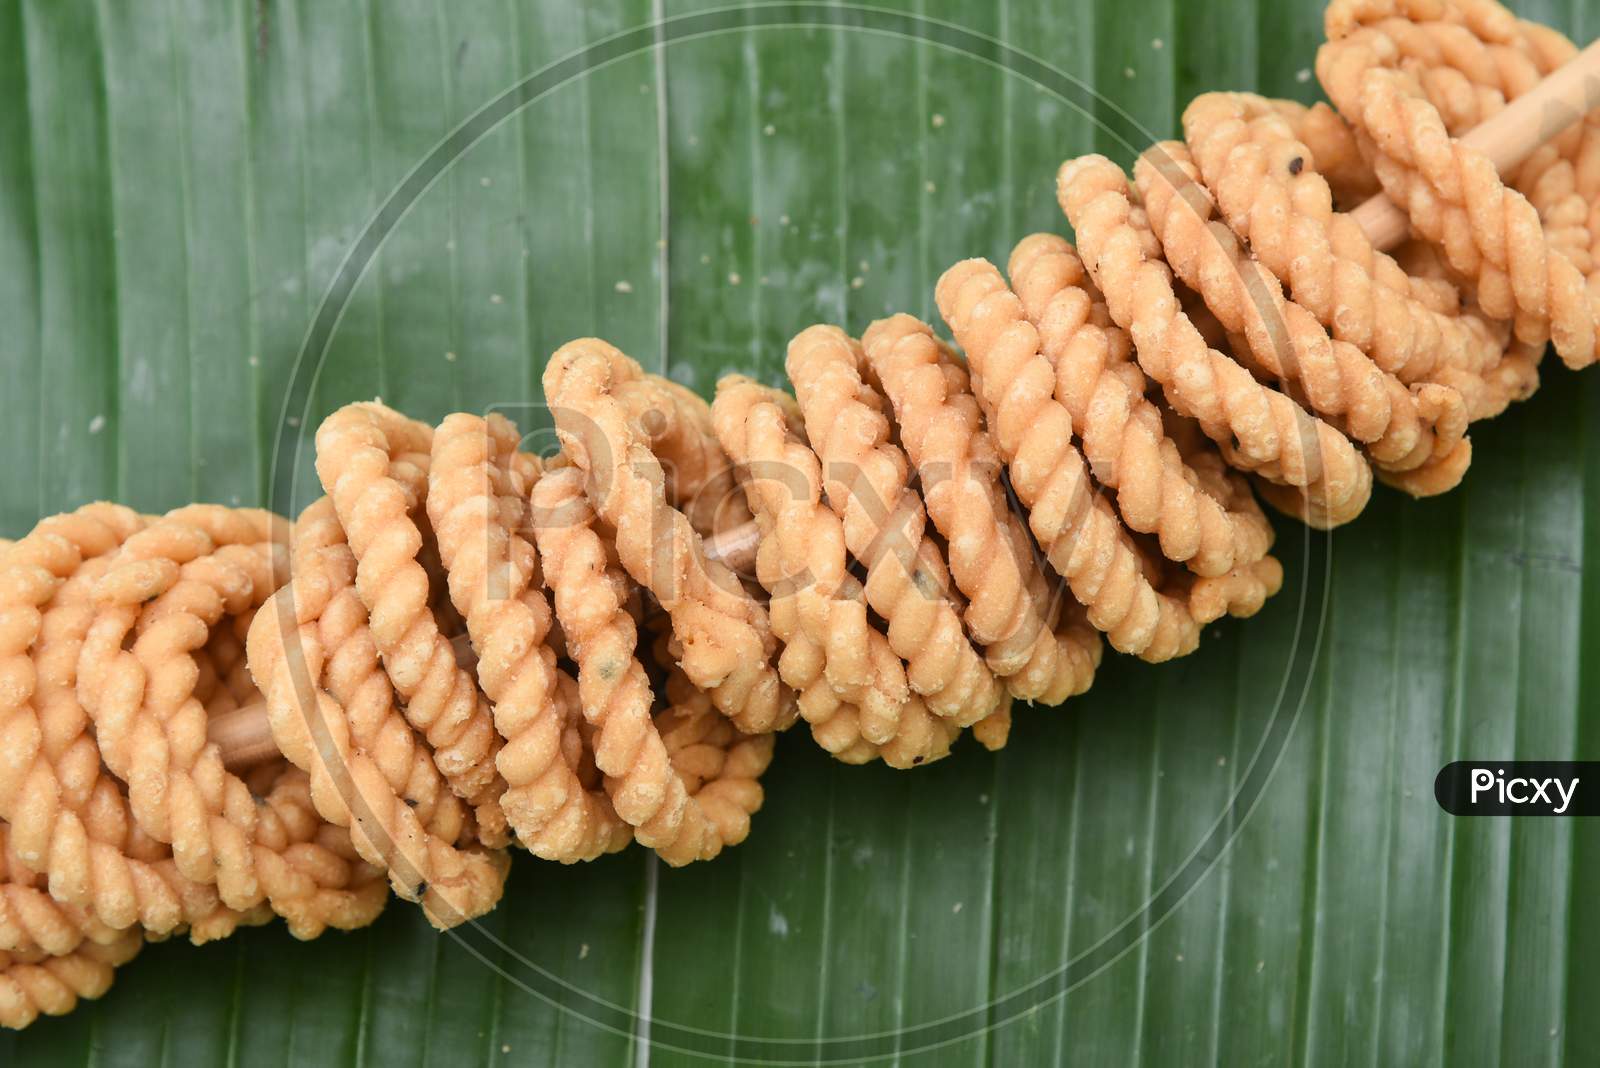 Kerala fried snack rice Murukku, Chakli, Chakali